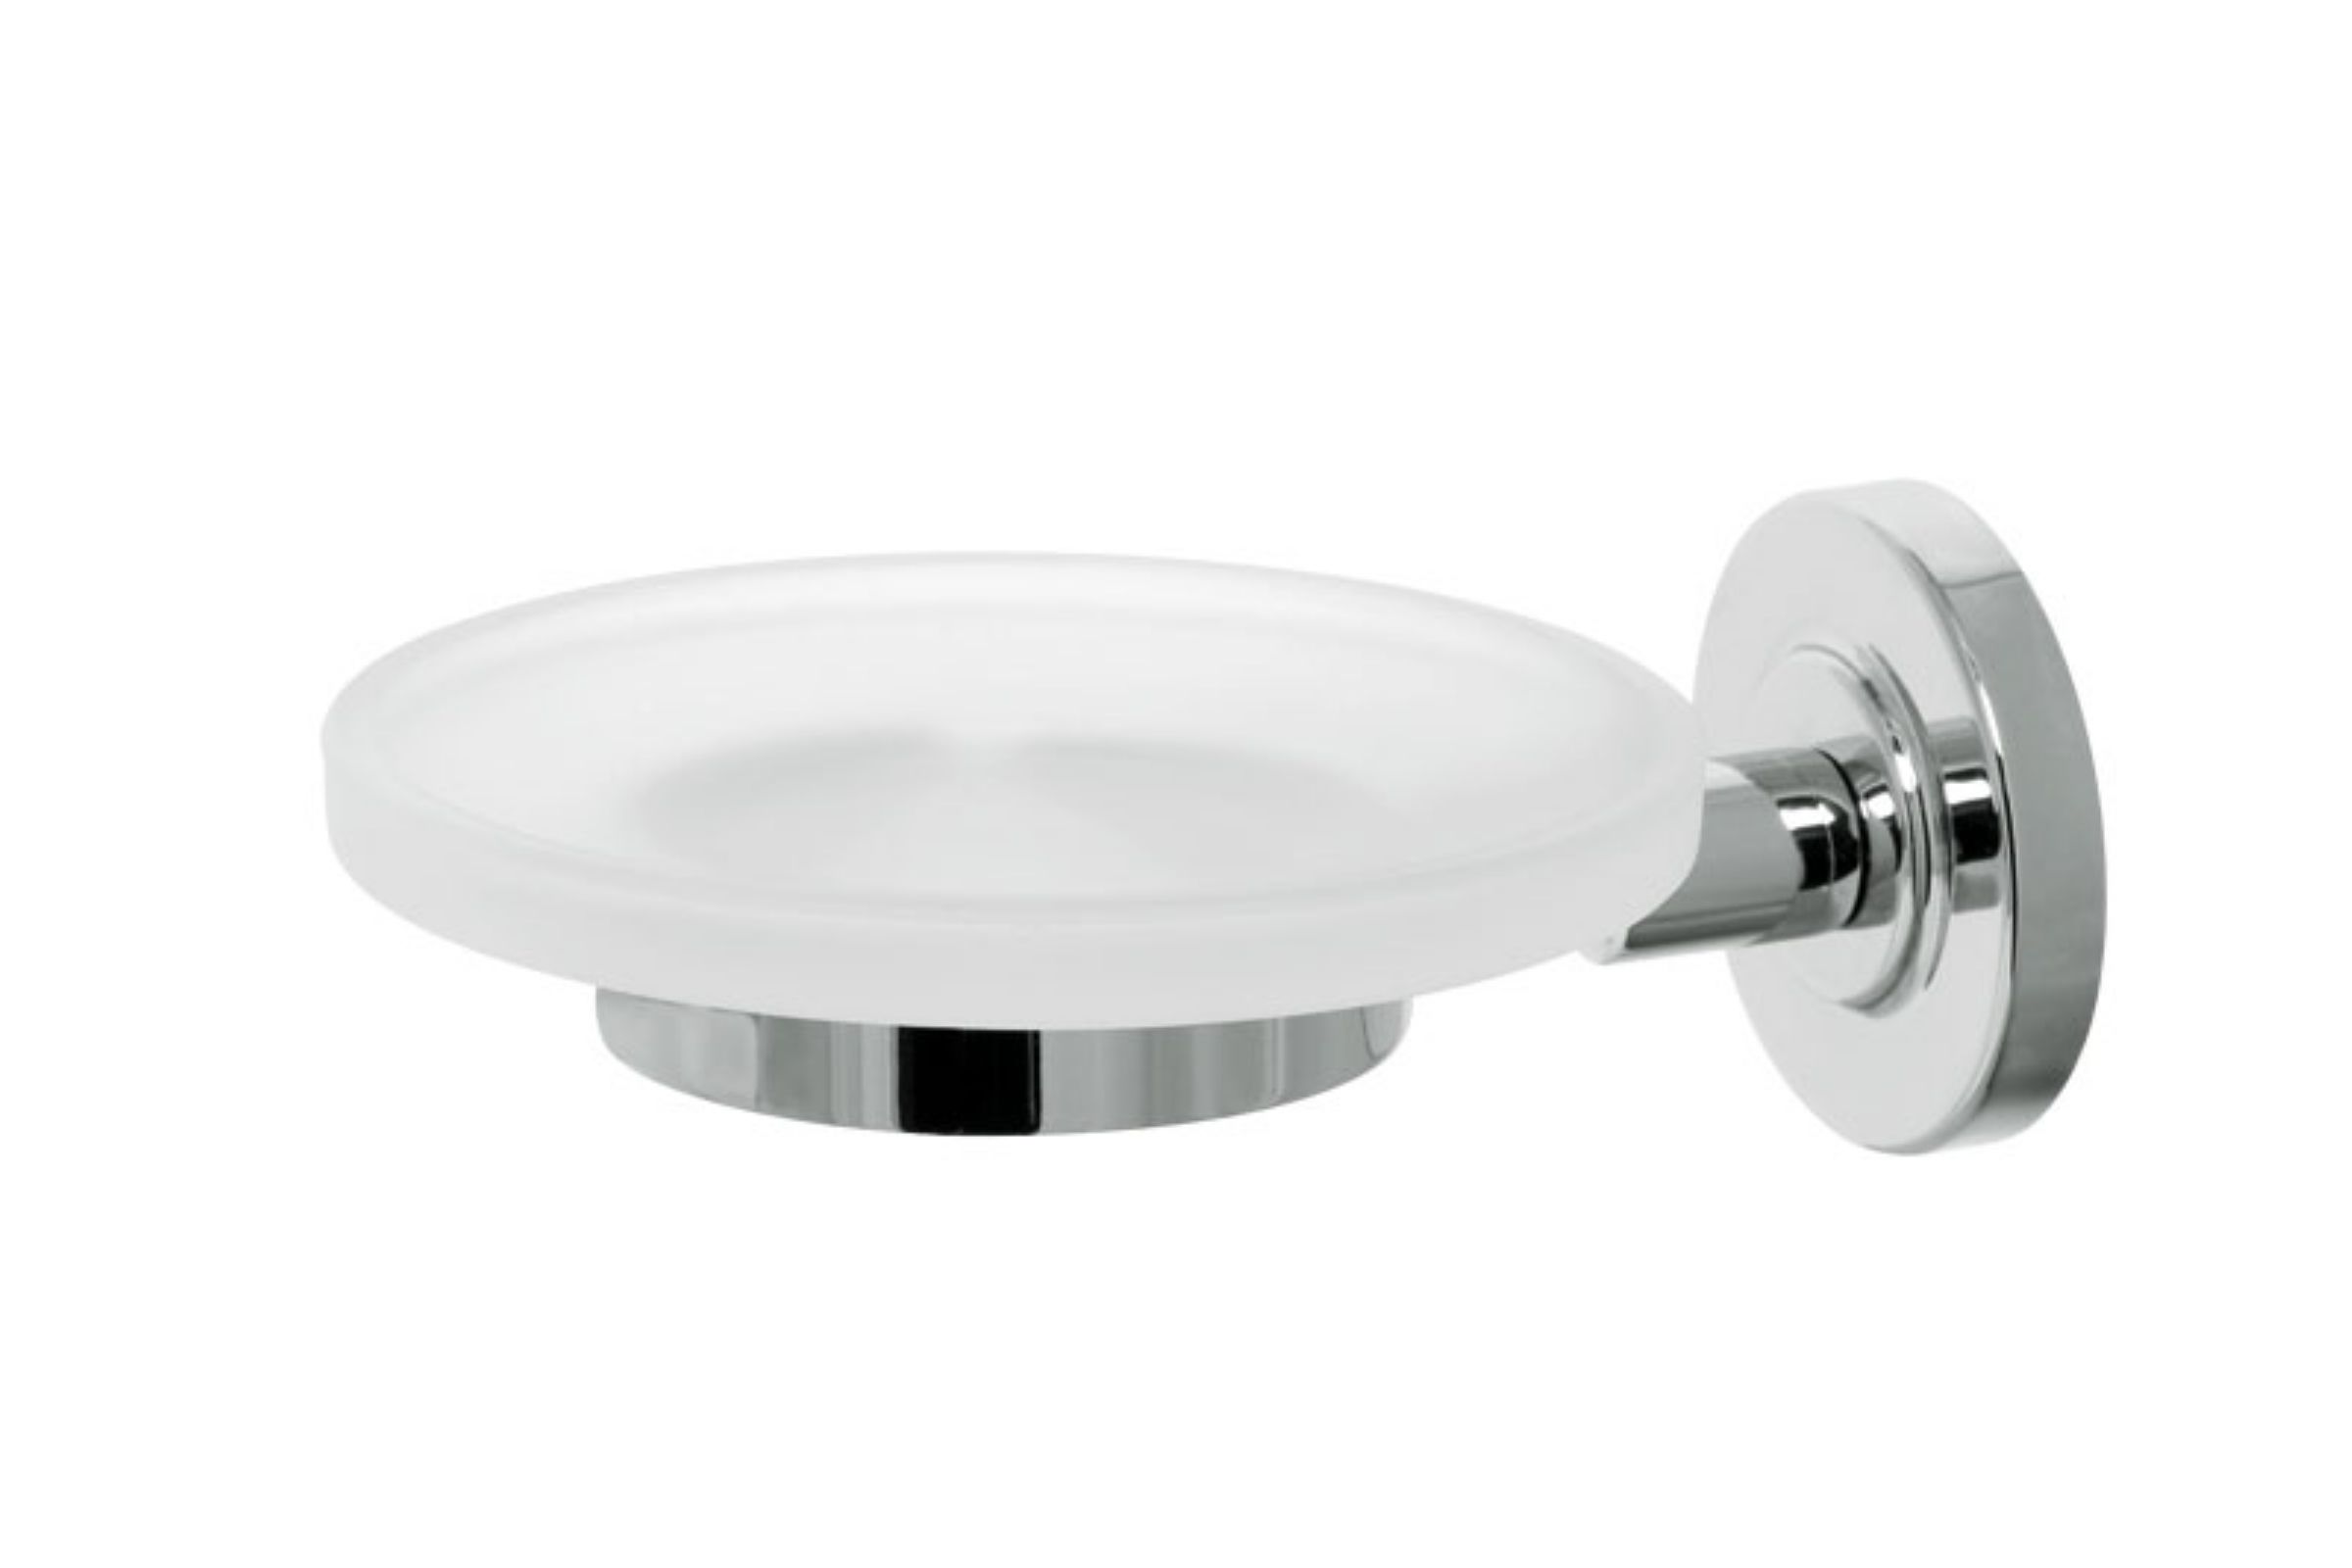 porta sapone vetro soap dish in glass cm. 11x14x5,5 IRIDE